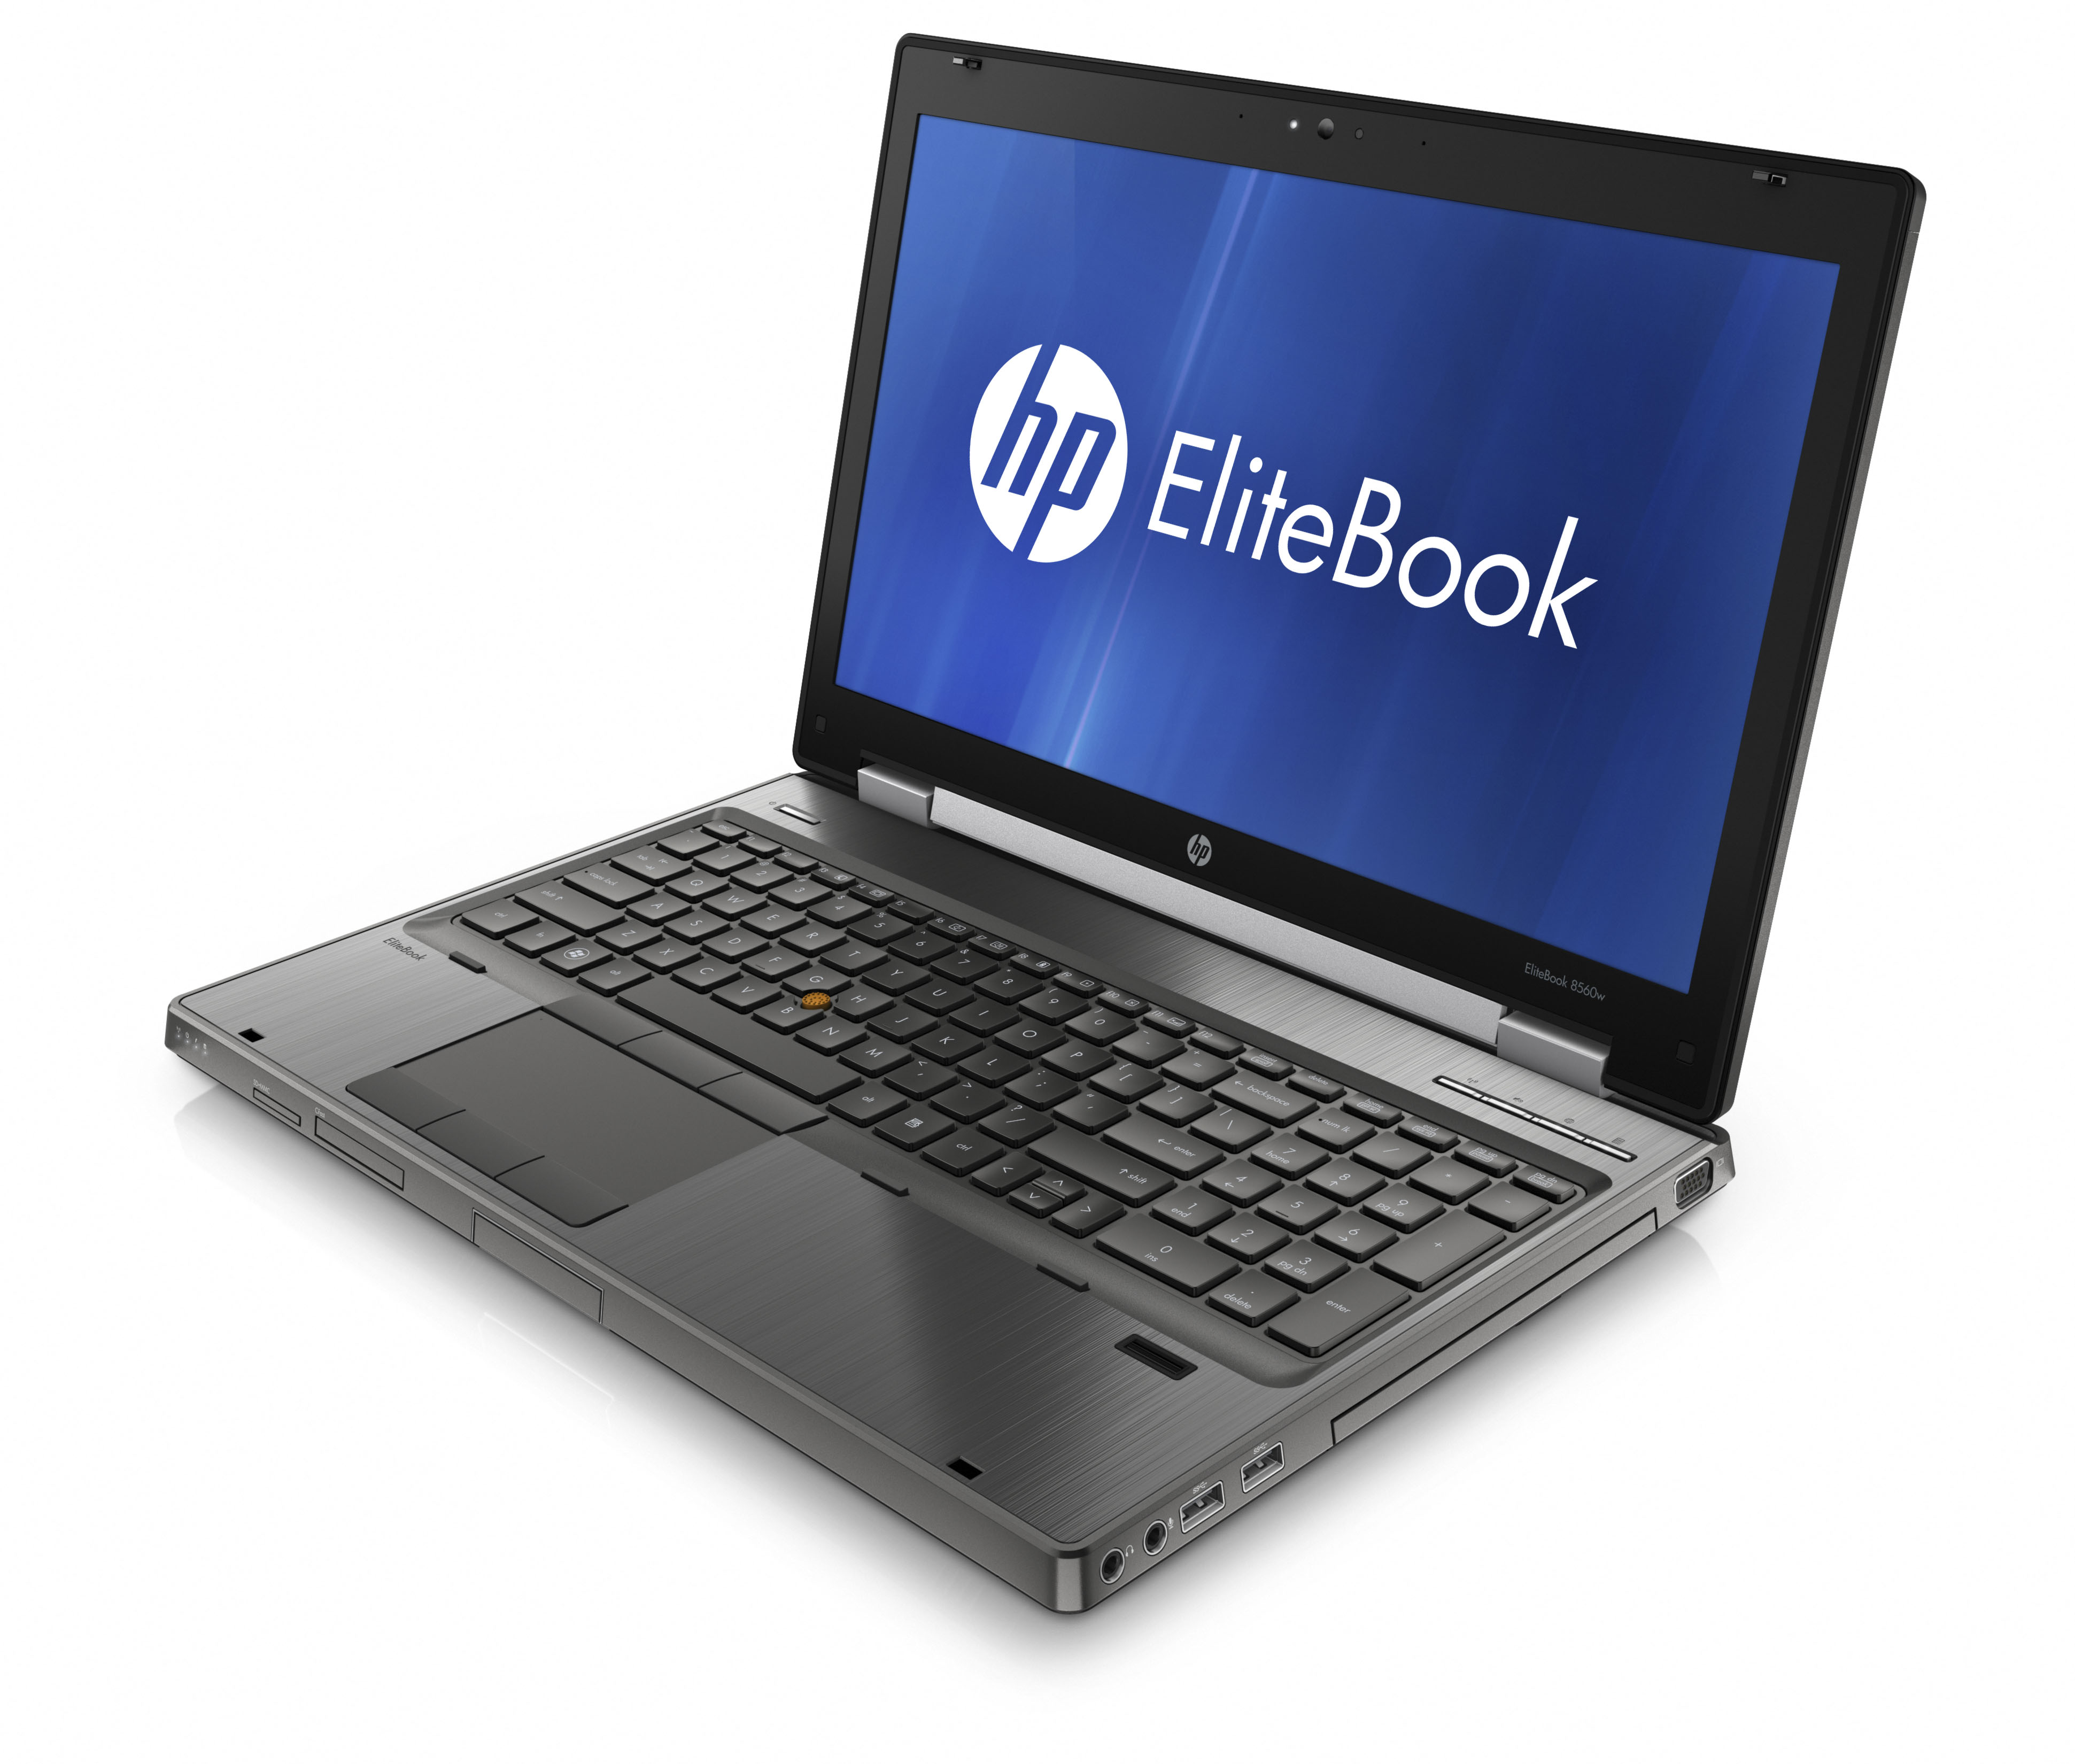 gør ikke sengetøj hobby HP EliteBook 8560w Details, Specs and Pricing (Video)